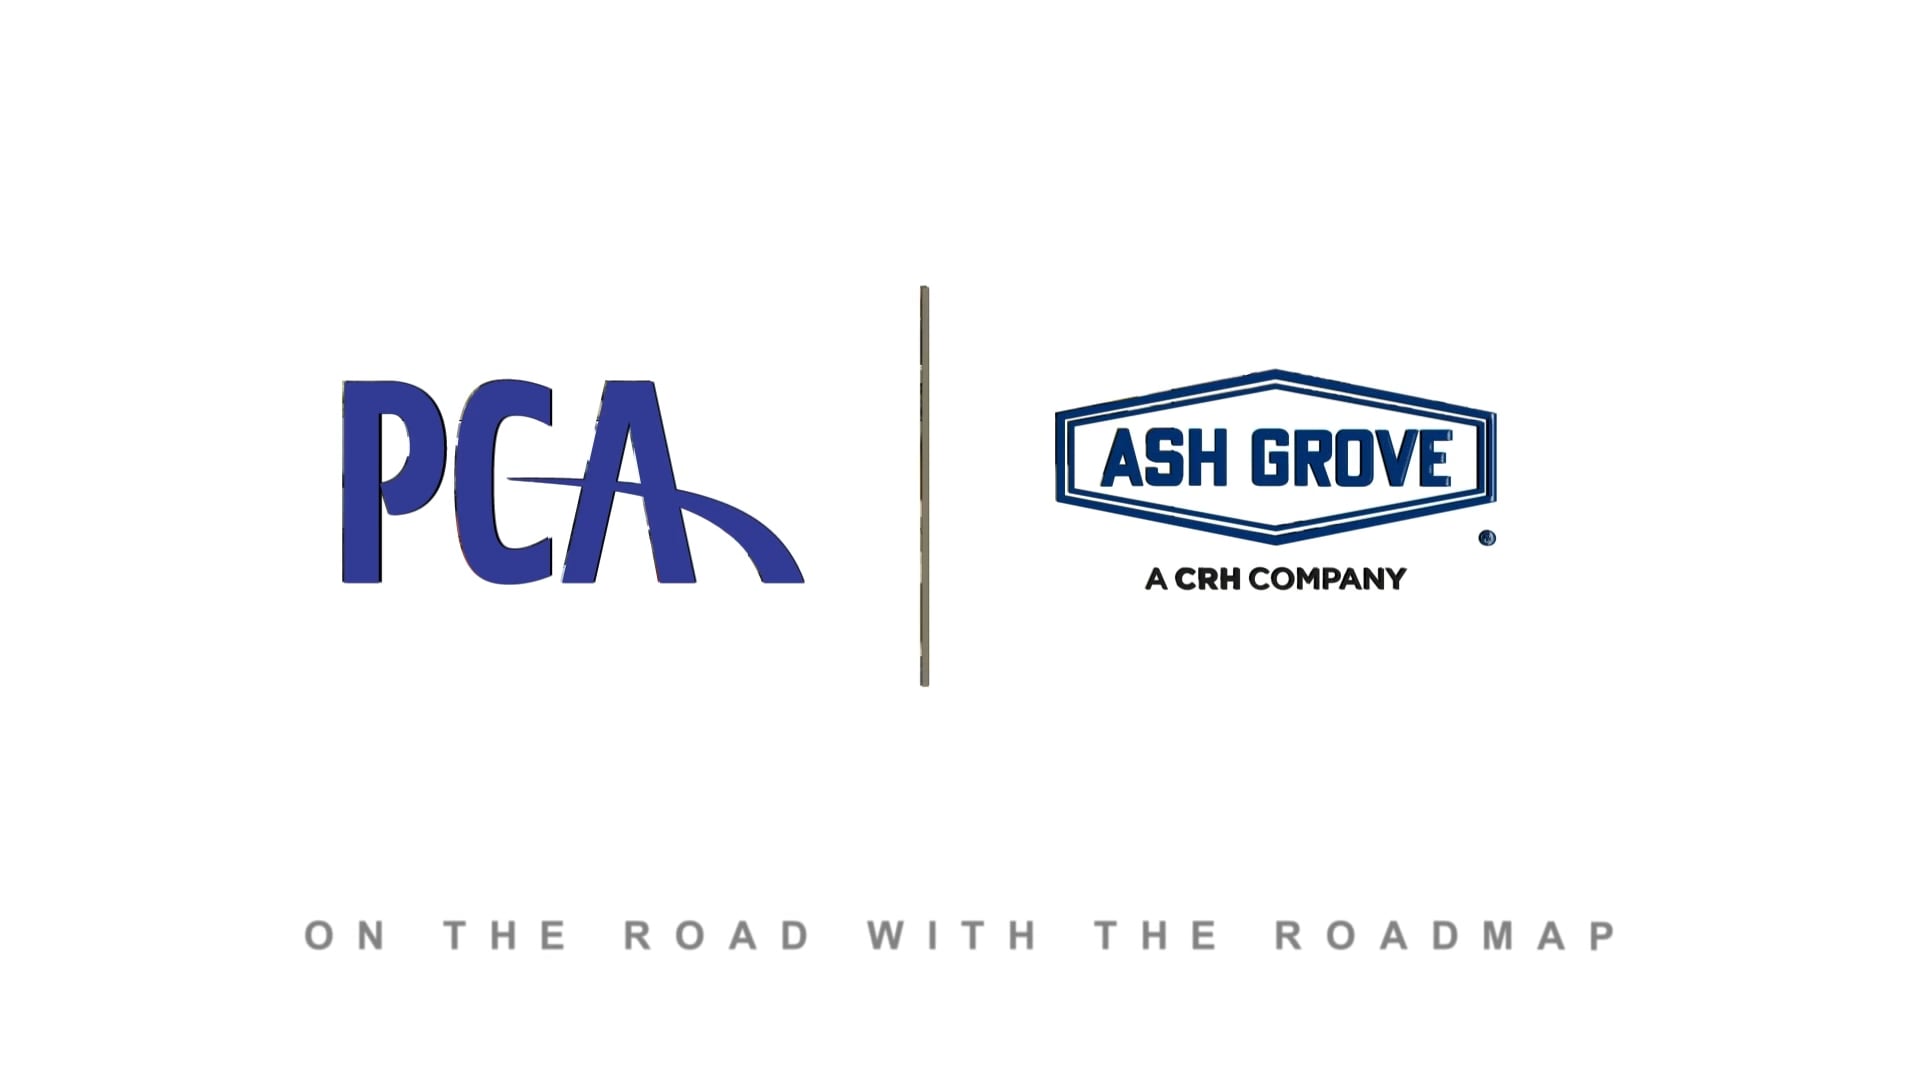 Ash Grove, a CRH Company: Corporate Culture